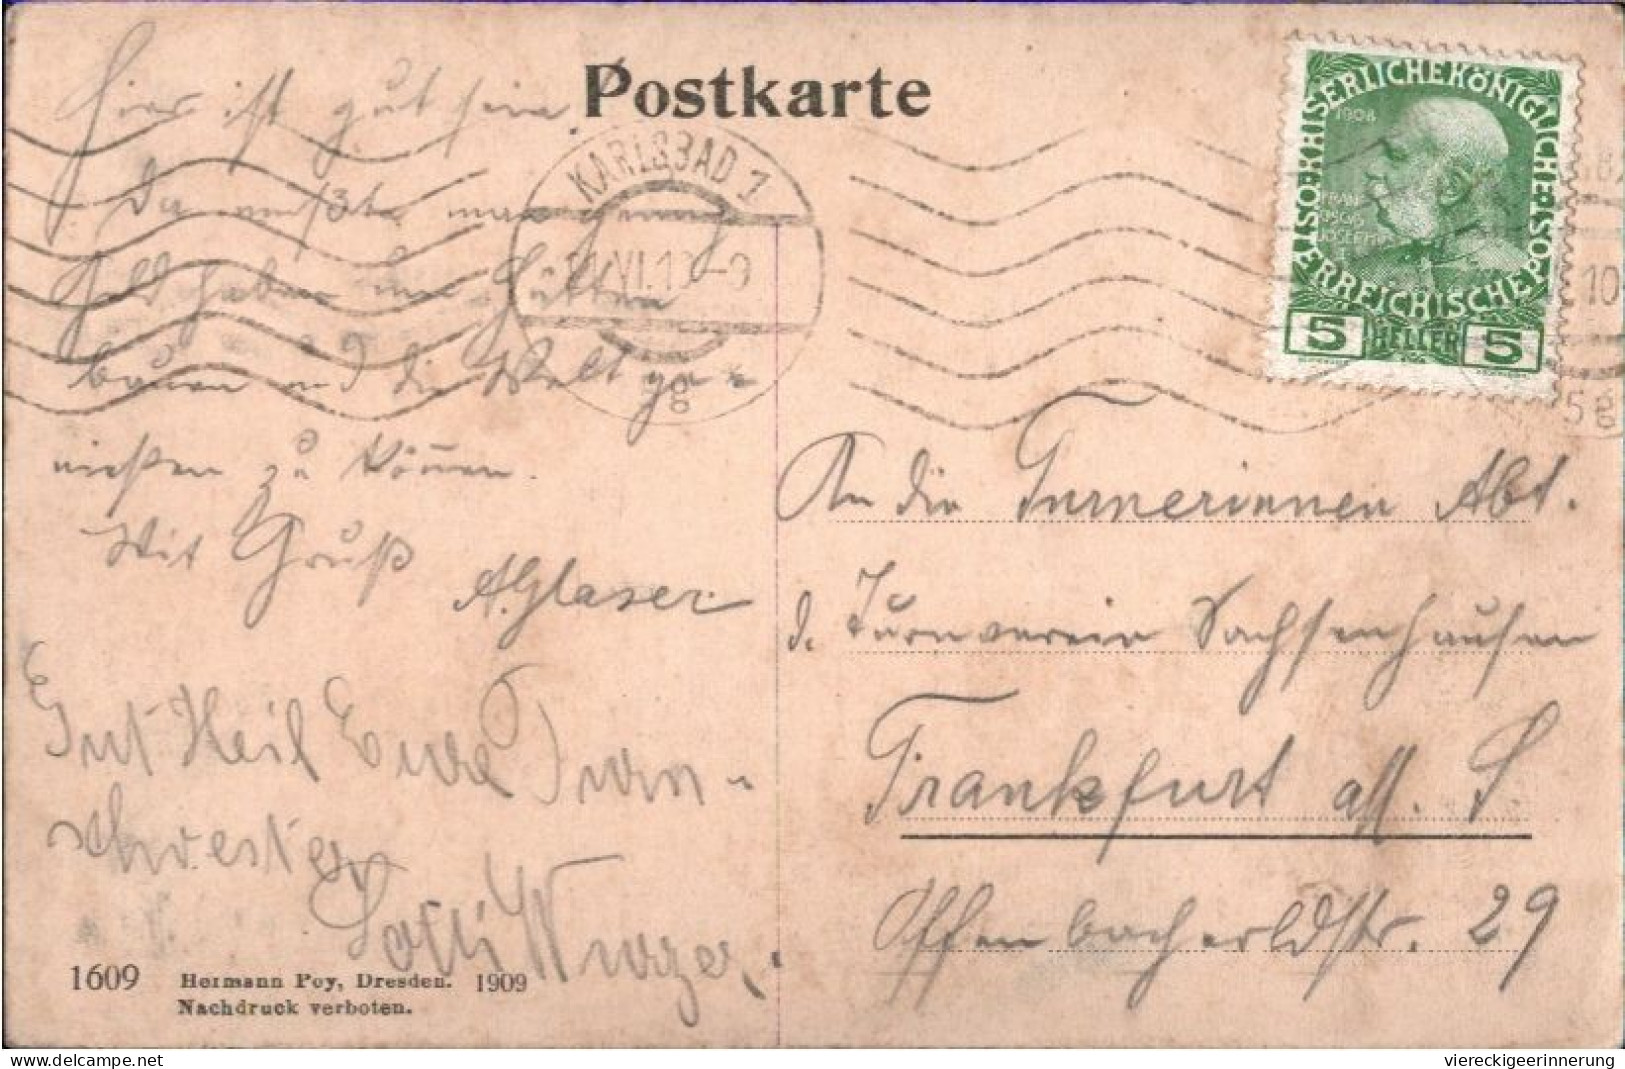 ! Alte Ansichtskarte Aus Karlsbad, Kreuzstraße, 1910 - Czech Republic